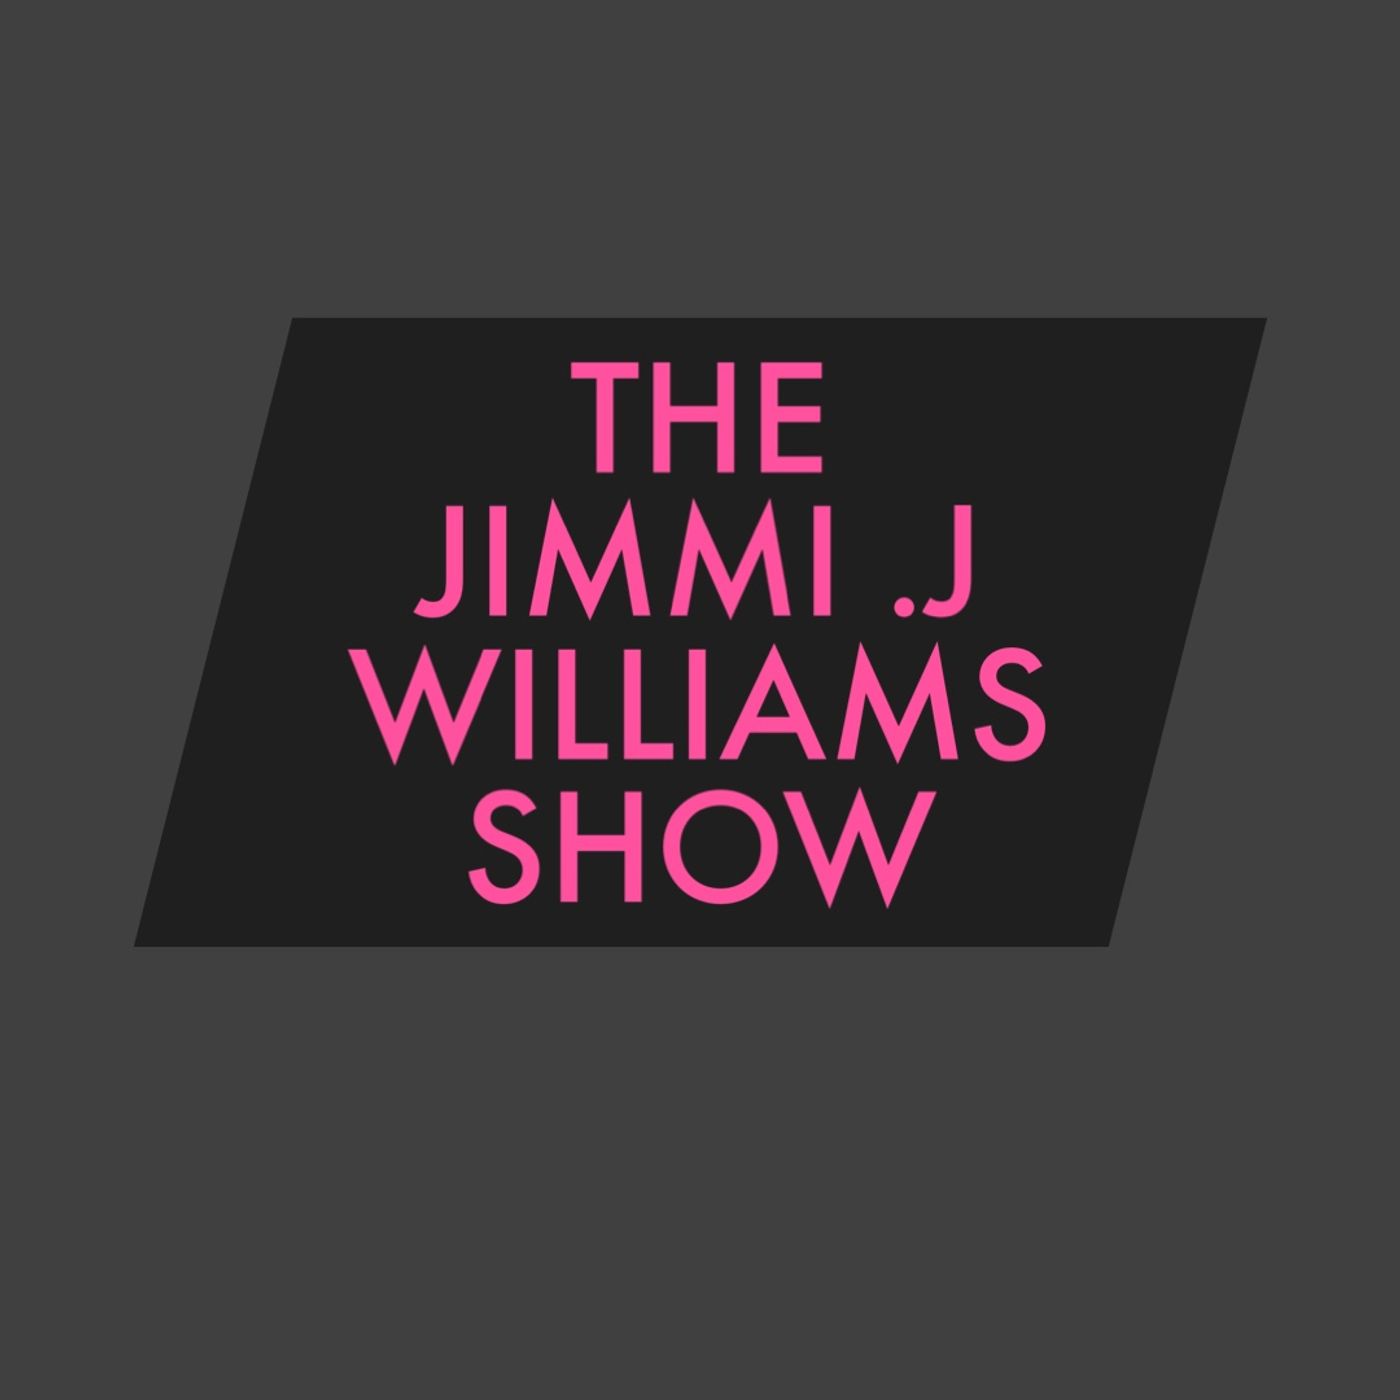 The Jimmi .J Williams Show